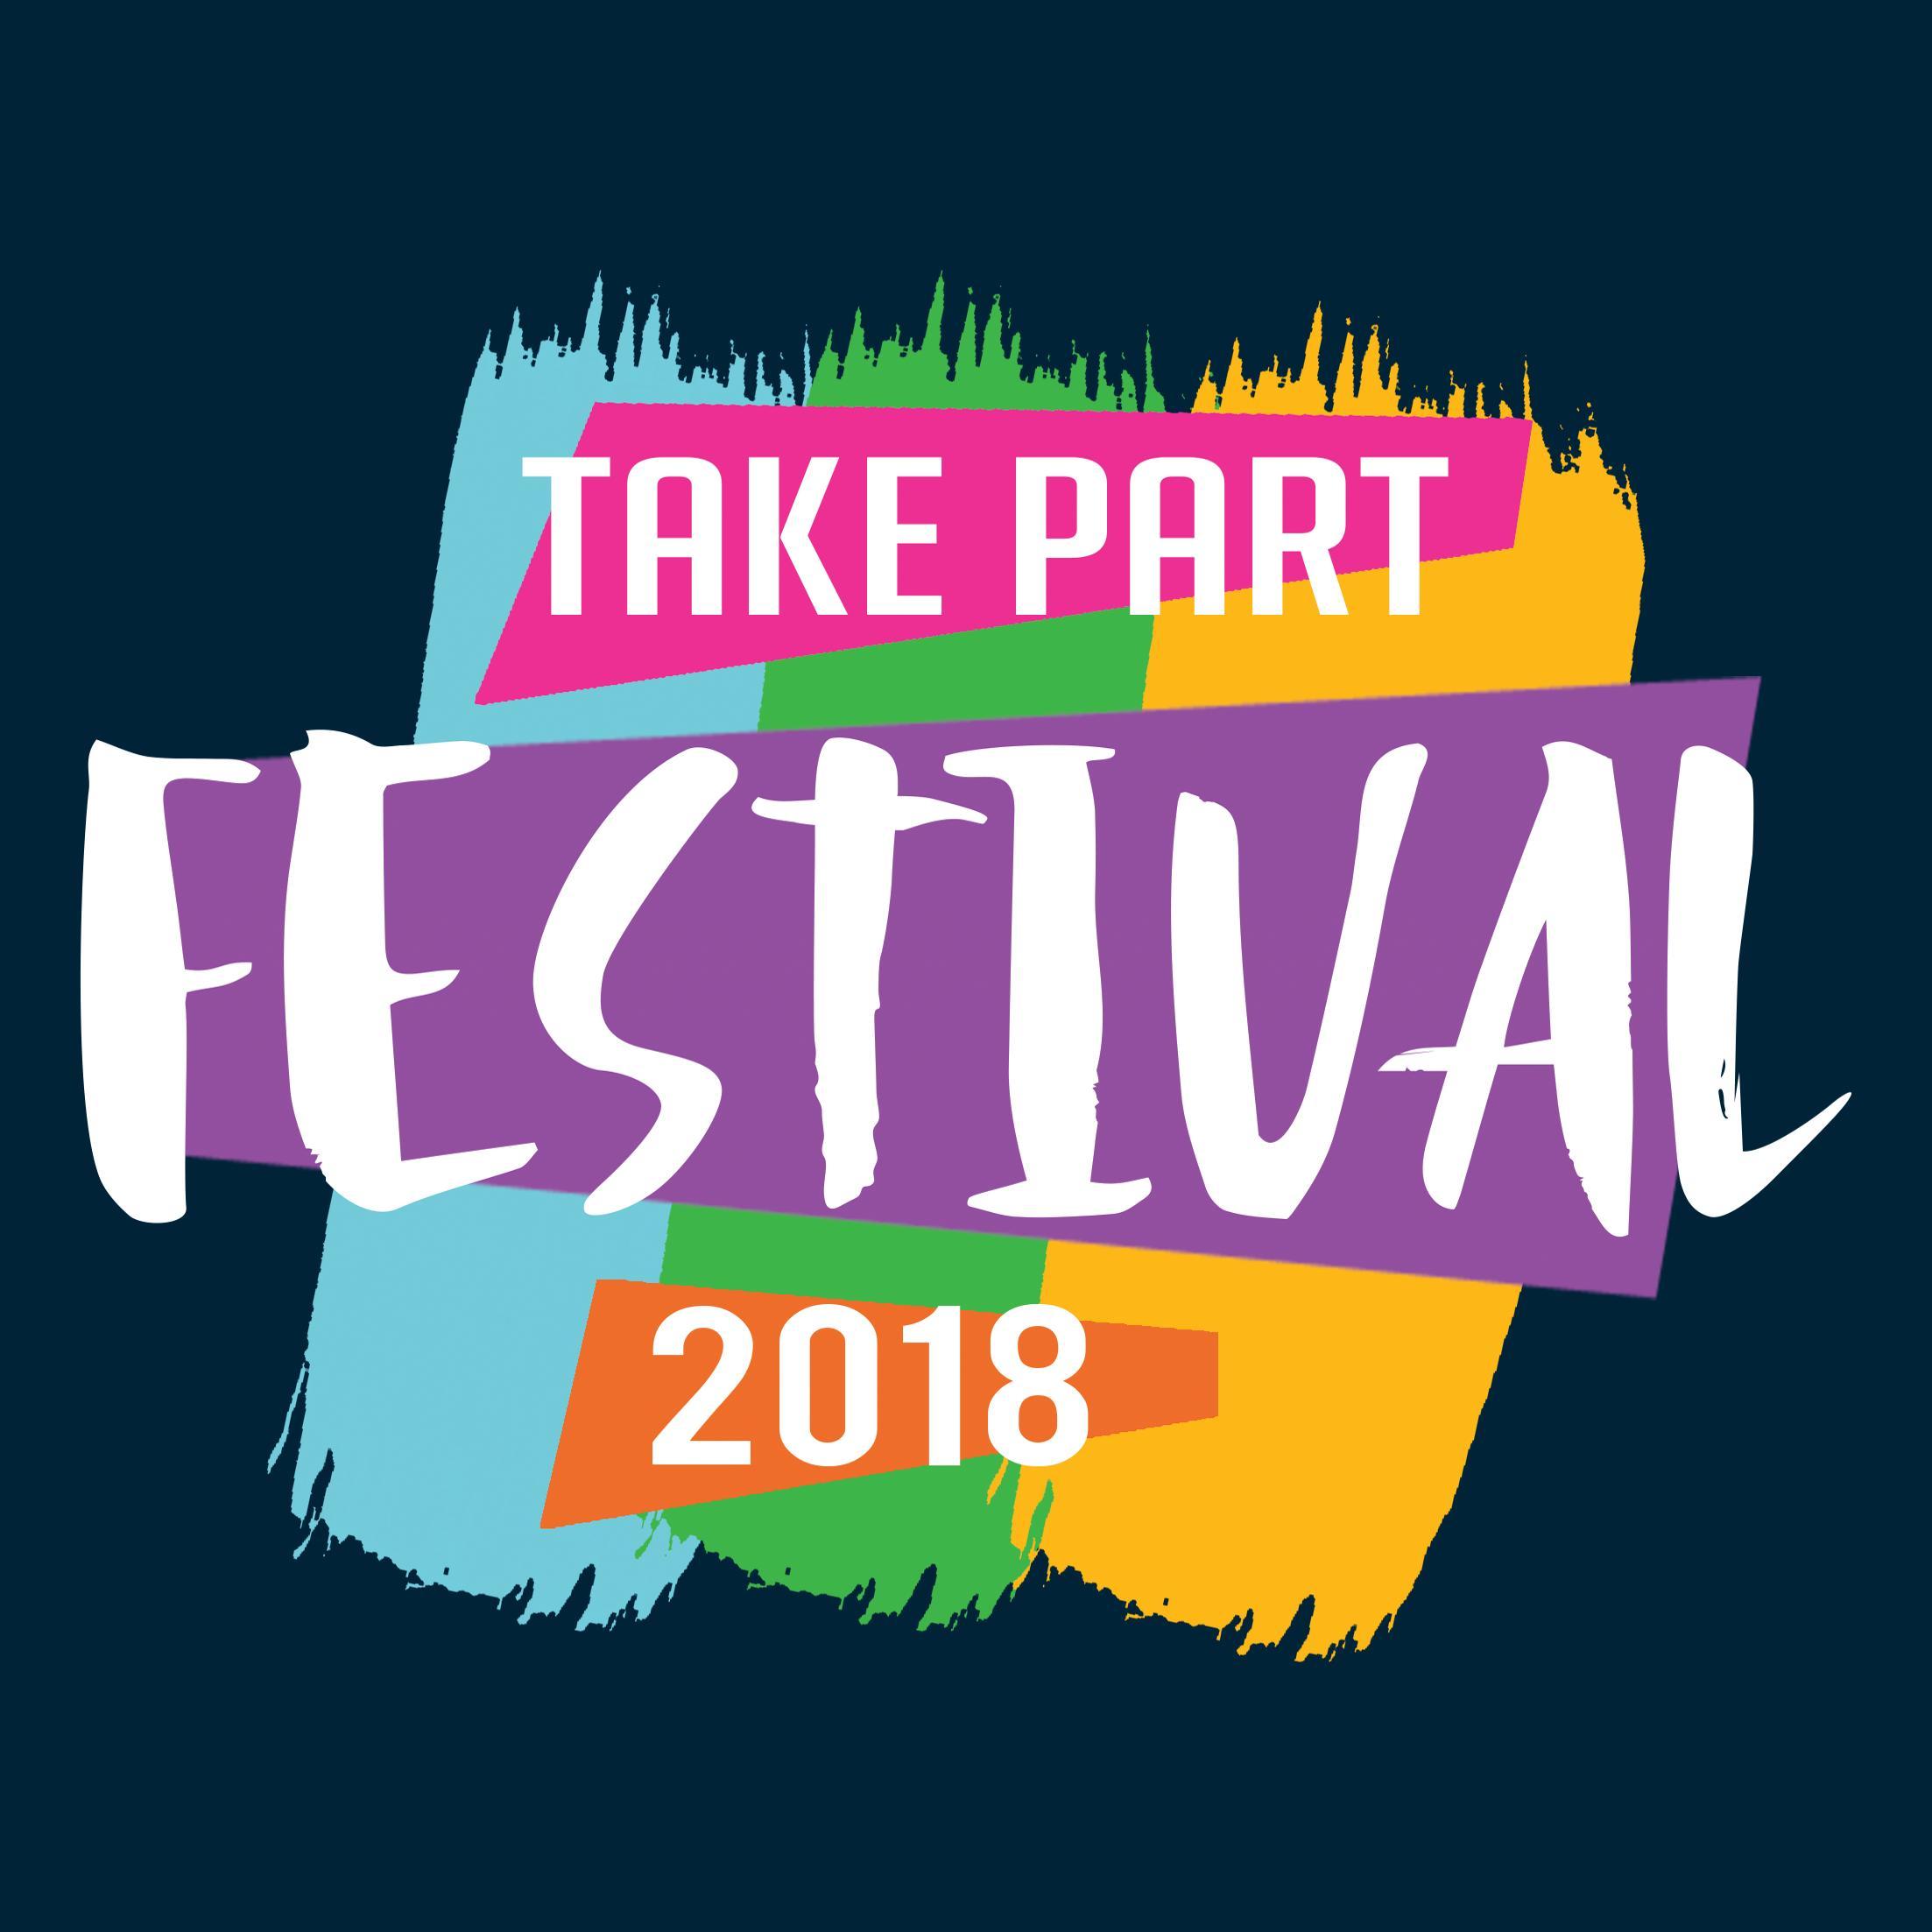 Festival Logo - Take Part Festival logo square - Queen's Theatre